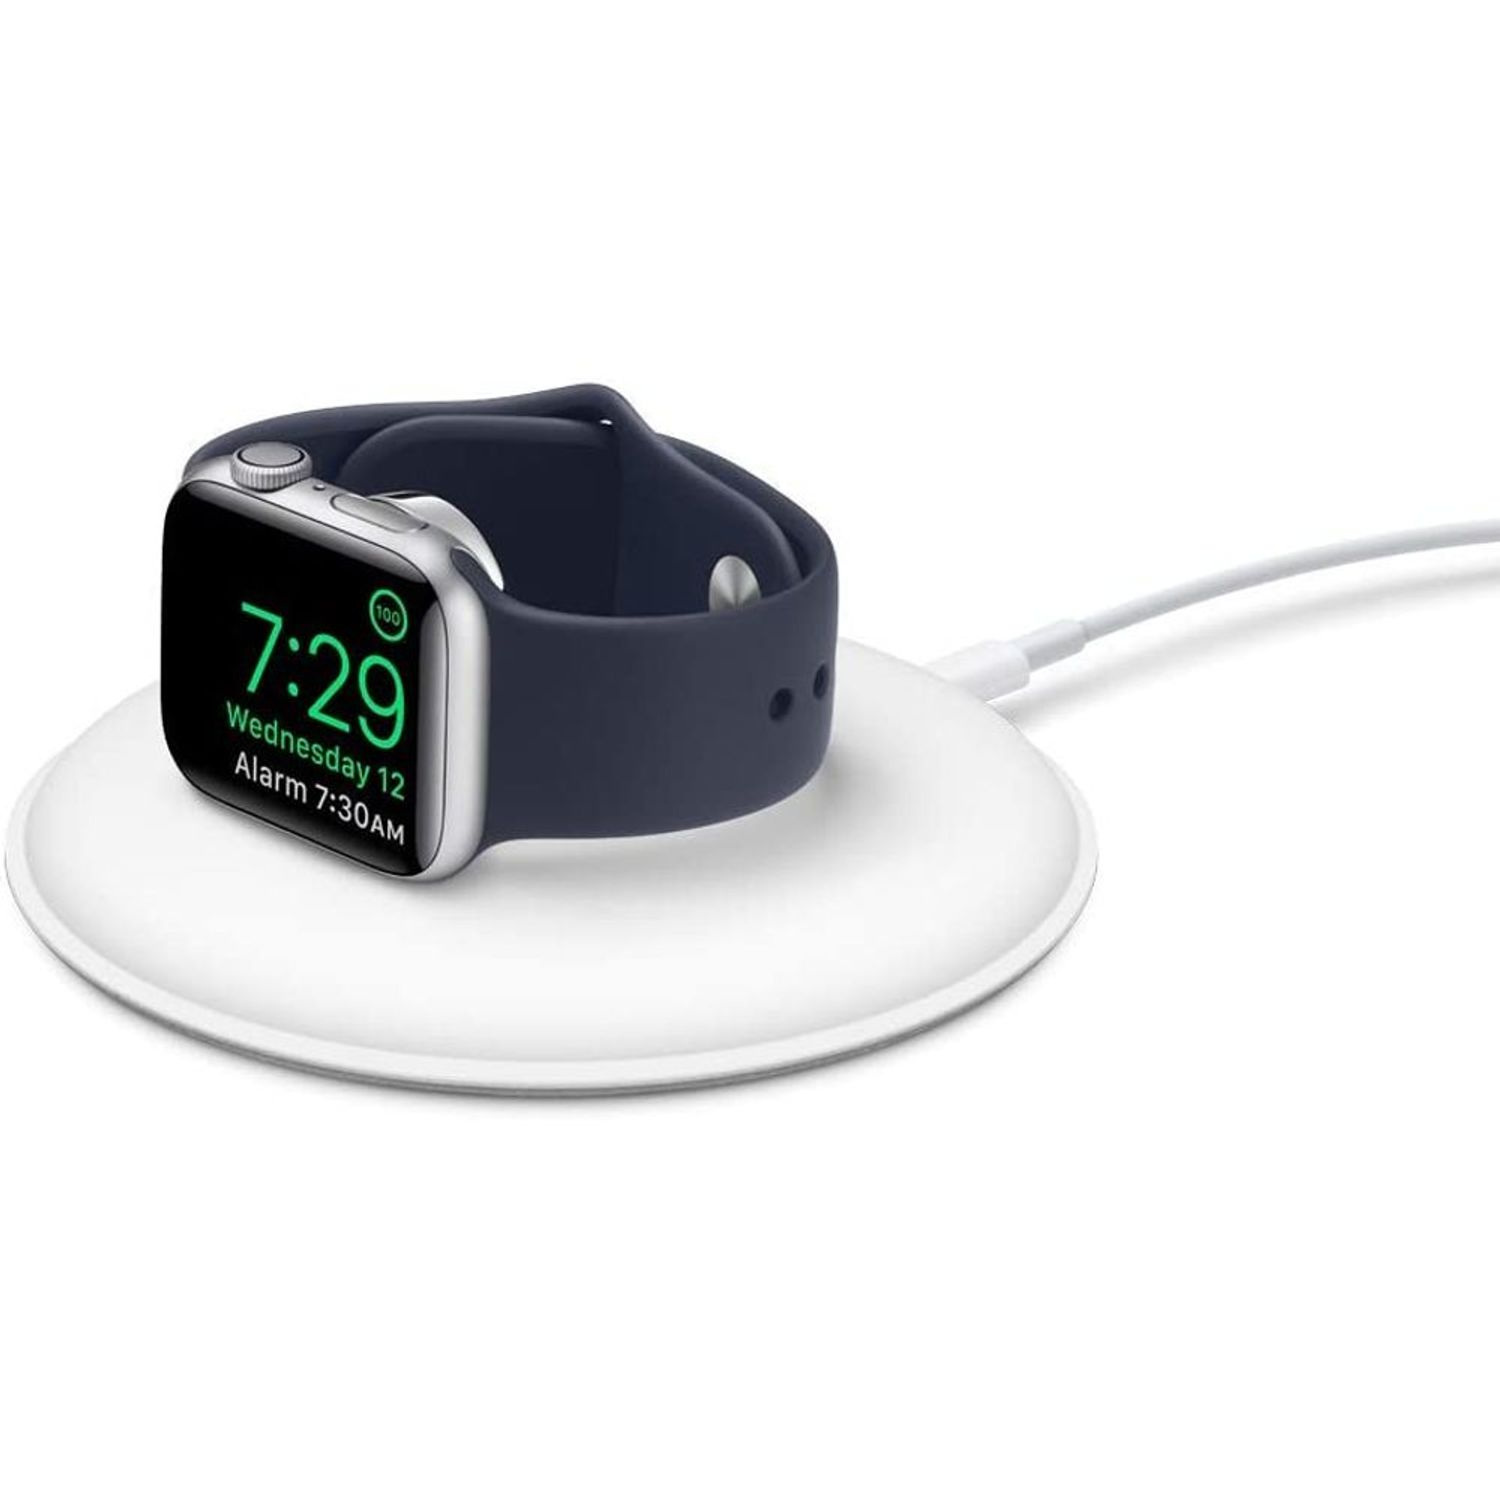 Cómo usar el cargador MagSafe Duo con el iPhone y el Apple Watch - Soporte  técnico de Apple (US)